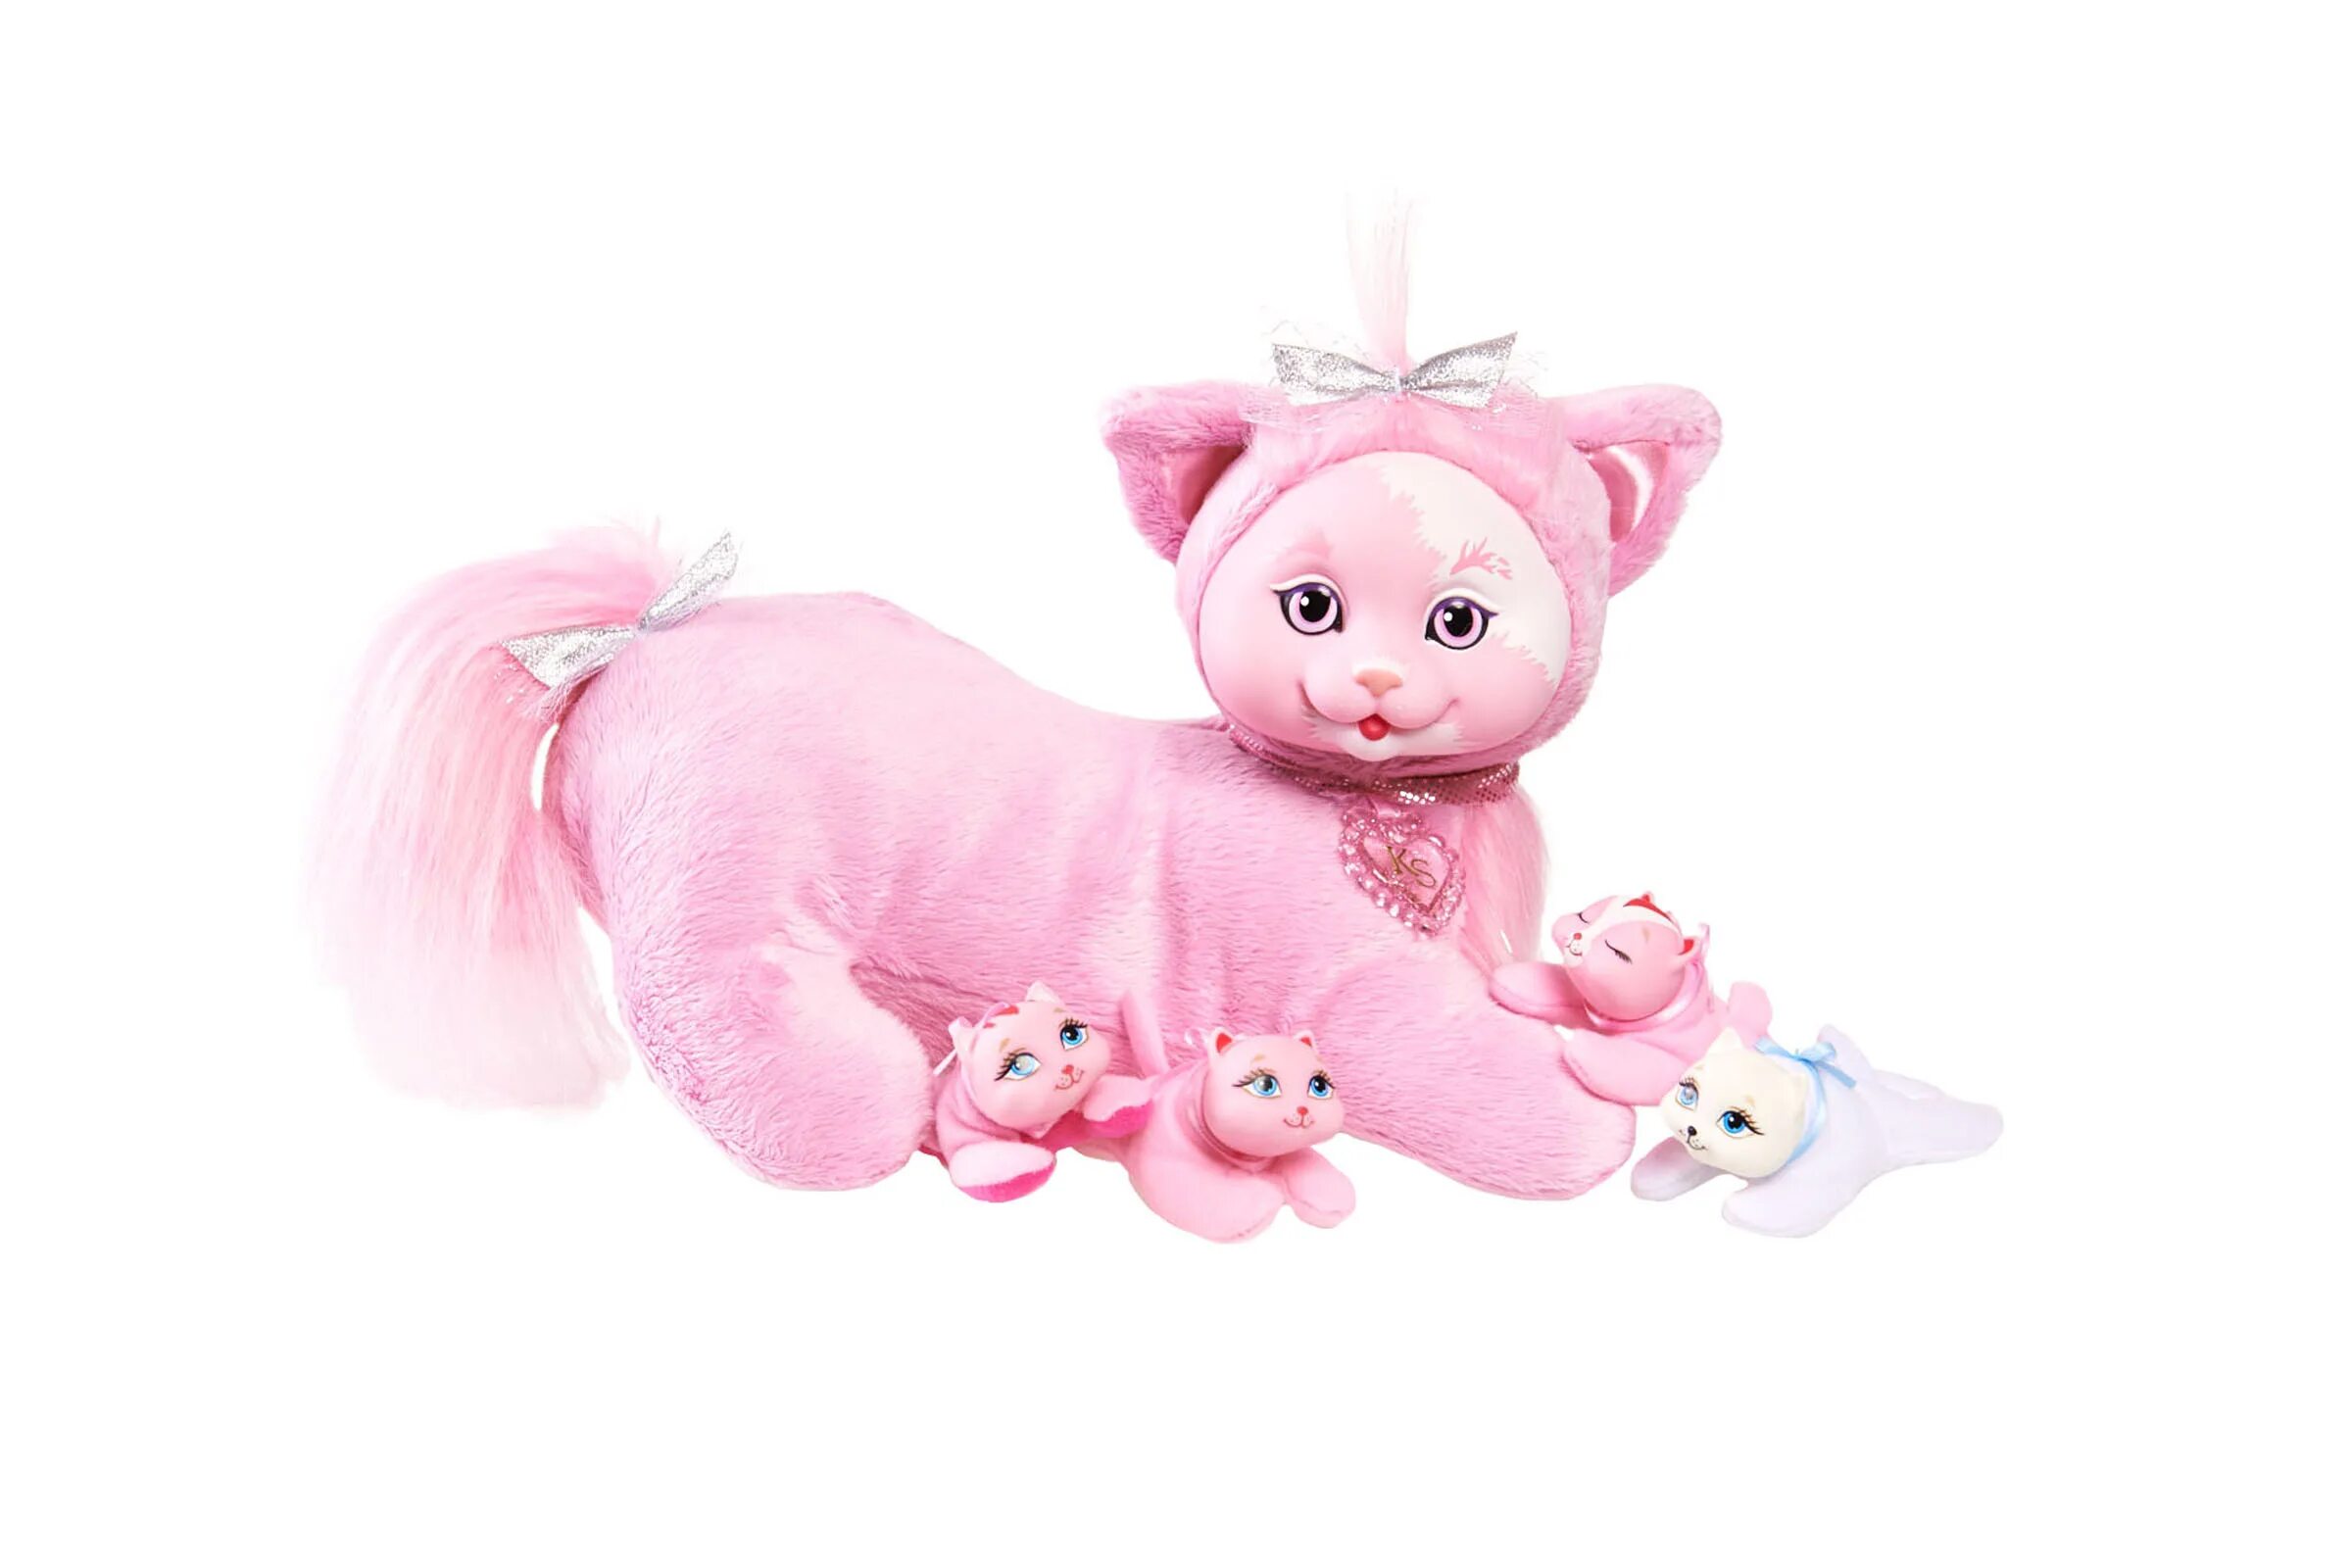 Китти сюрприз. Рожающая кошка игрушка. Китти сюрпрайз с котятами. Пластиковая игрушка кошка с одеждой.